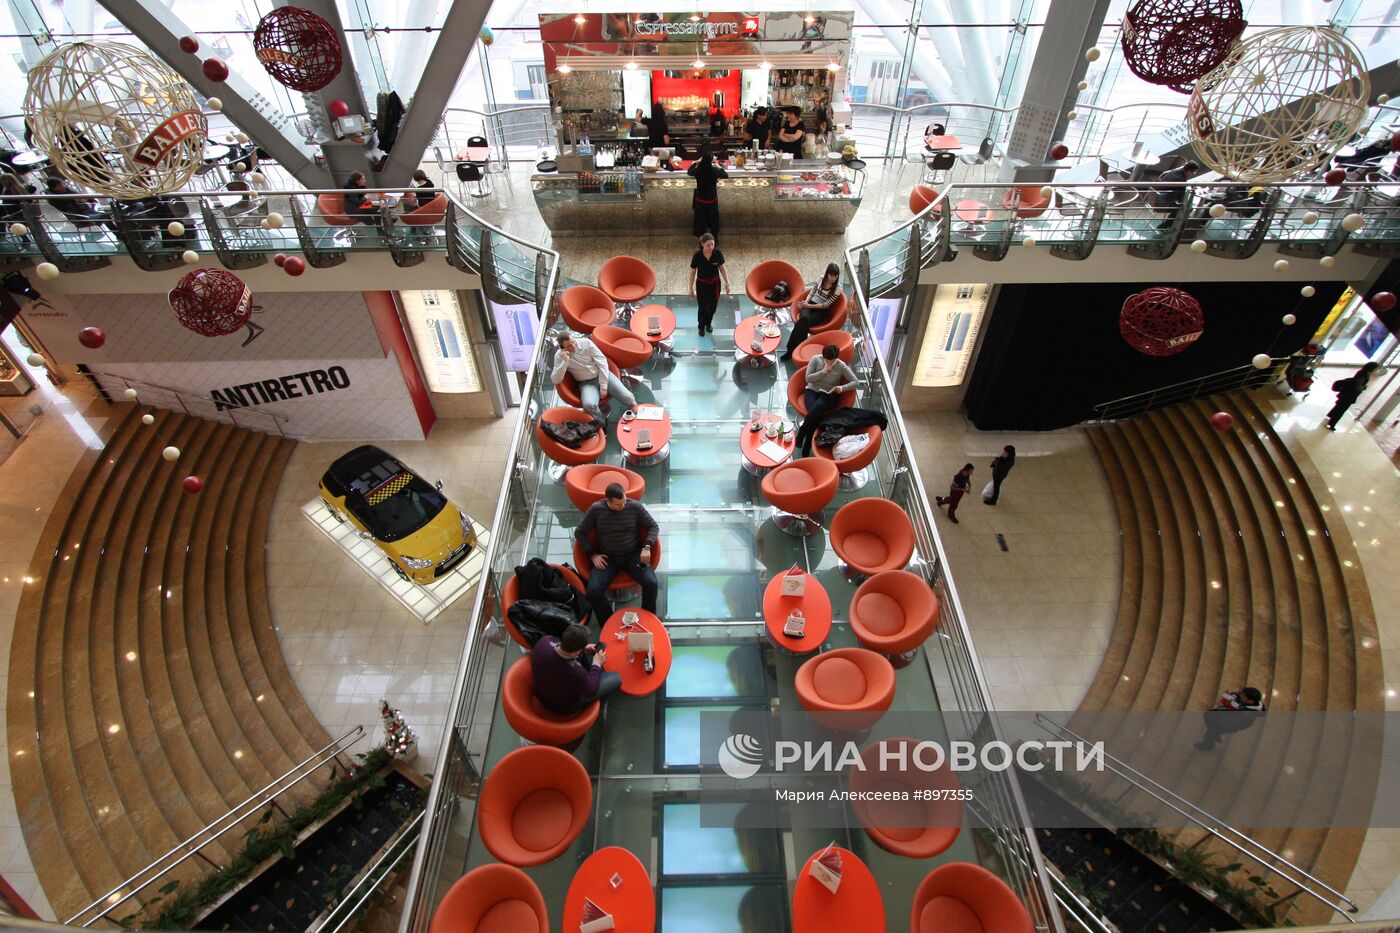 Торговый центр "Европейский" в Москве